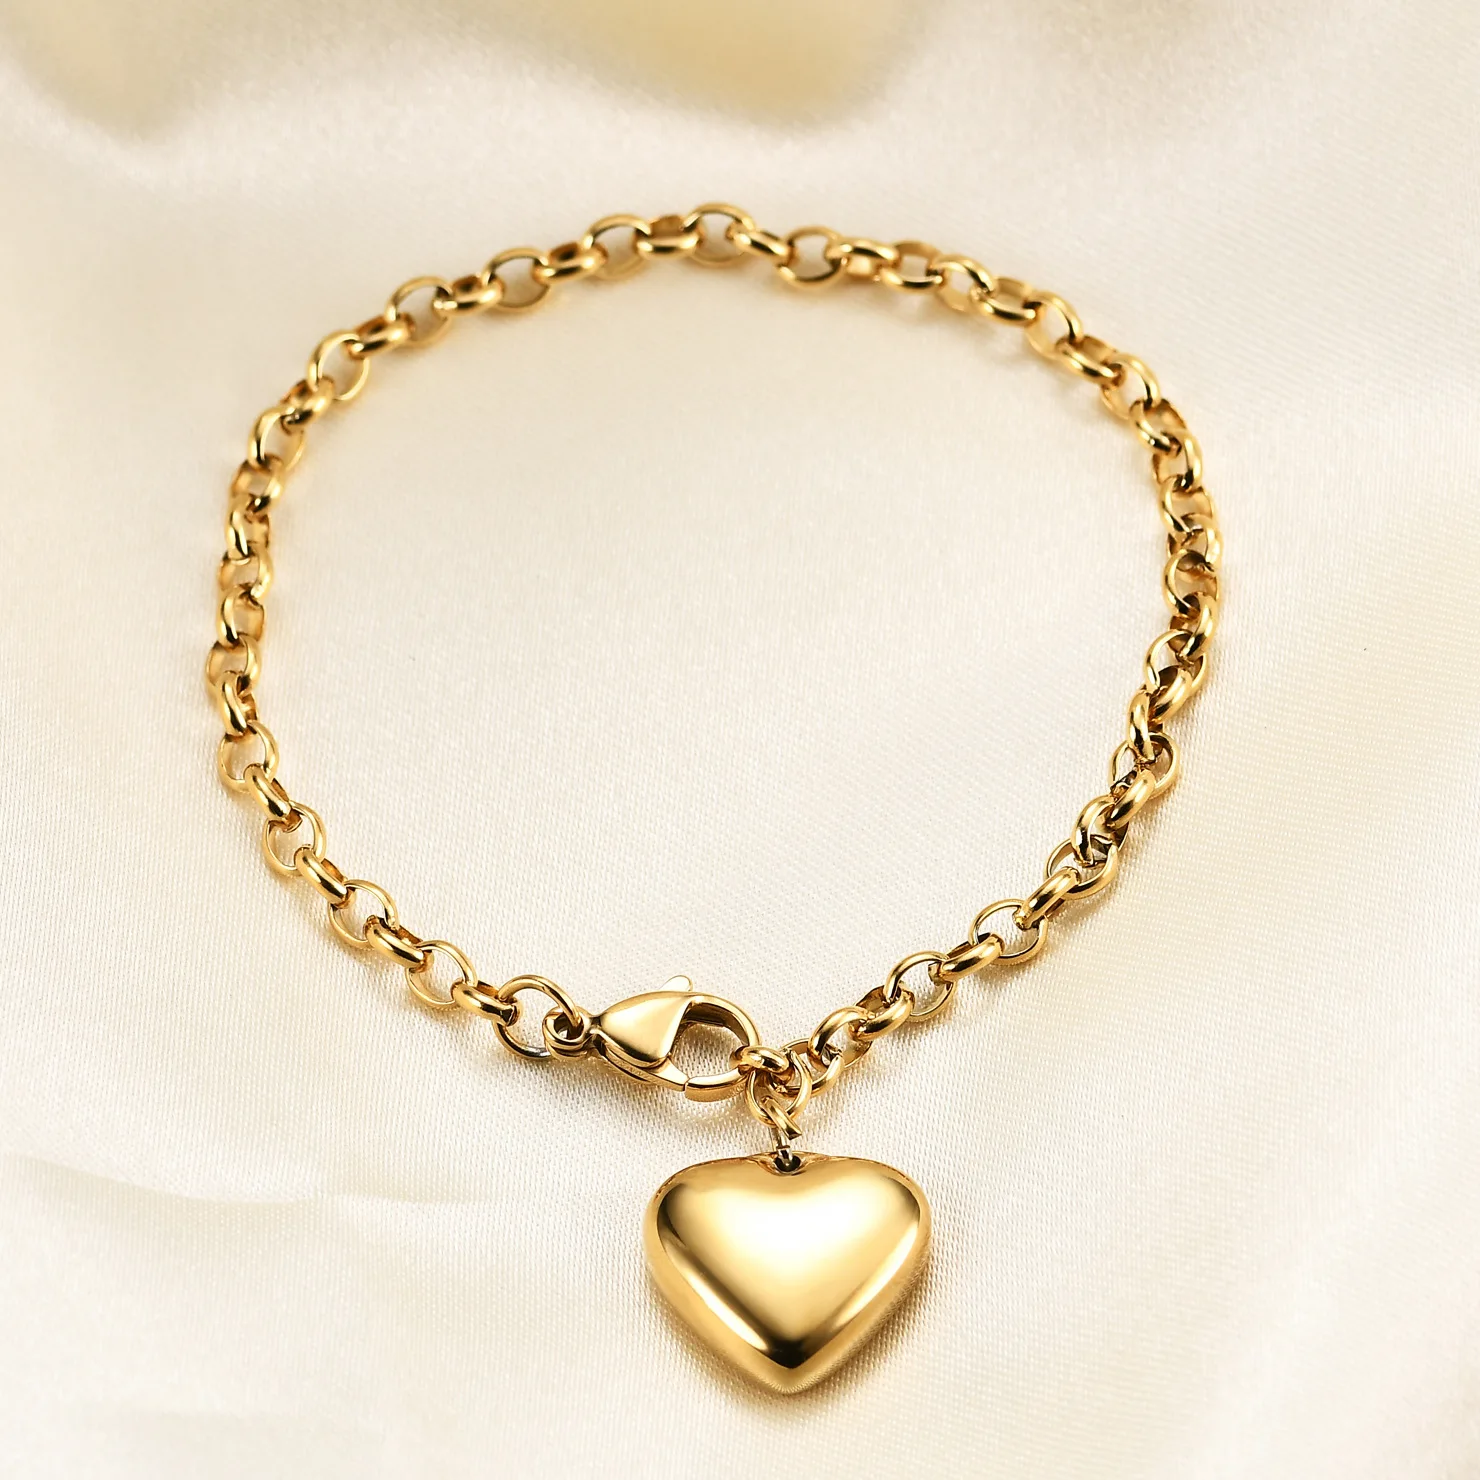 

2022 Wholesale Lobster Clasp Adjustable Bracelet Stainless Steel Bracelet Jewelry Romantic Heart Bracelet for Women Girls